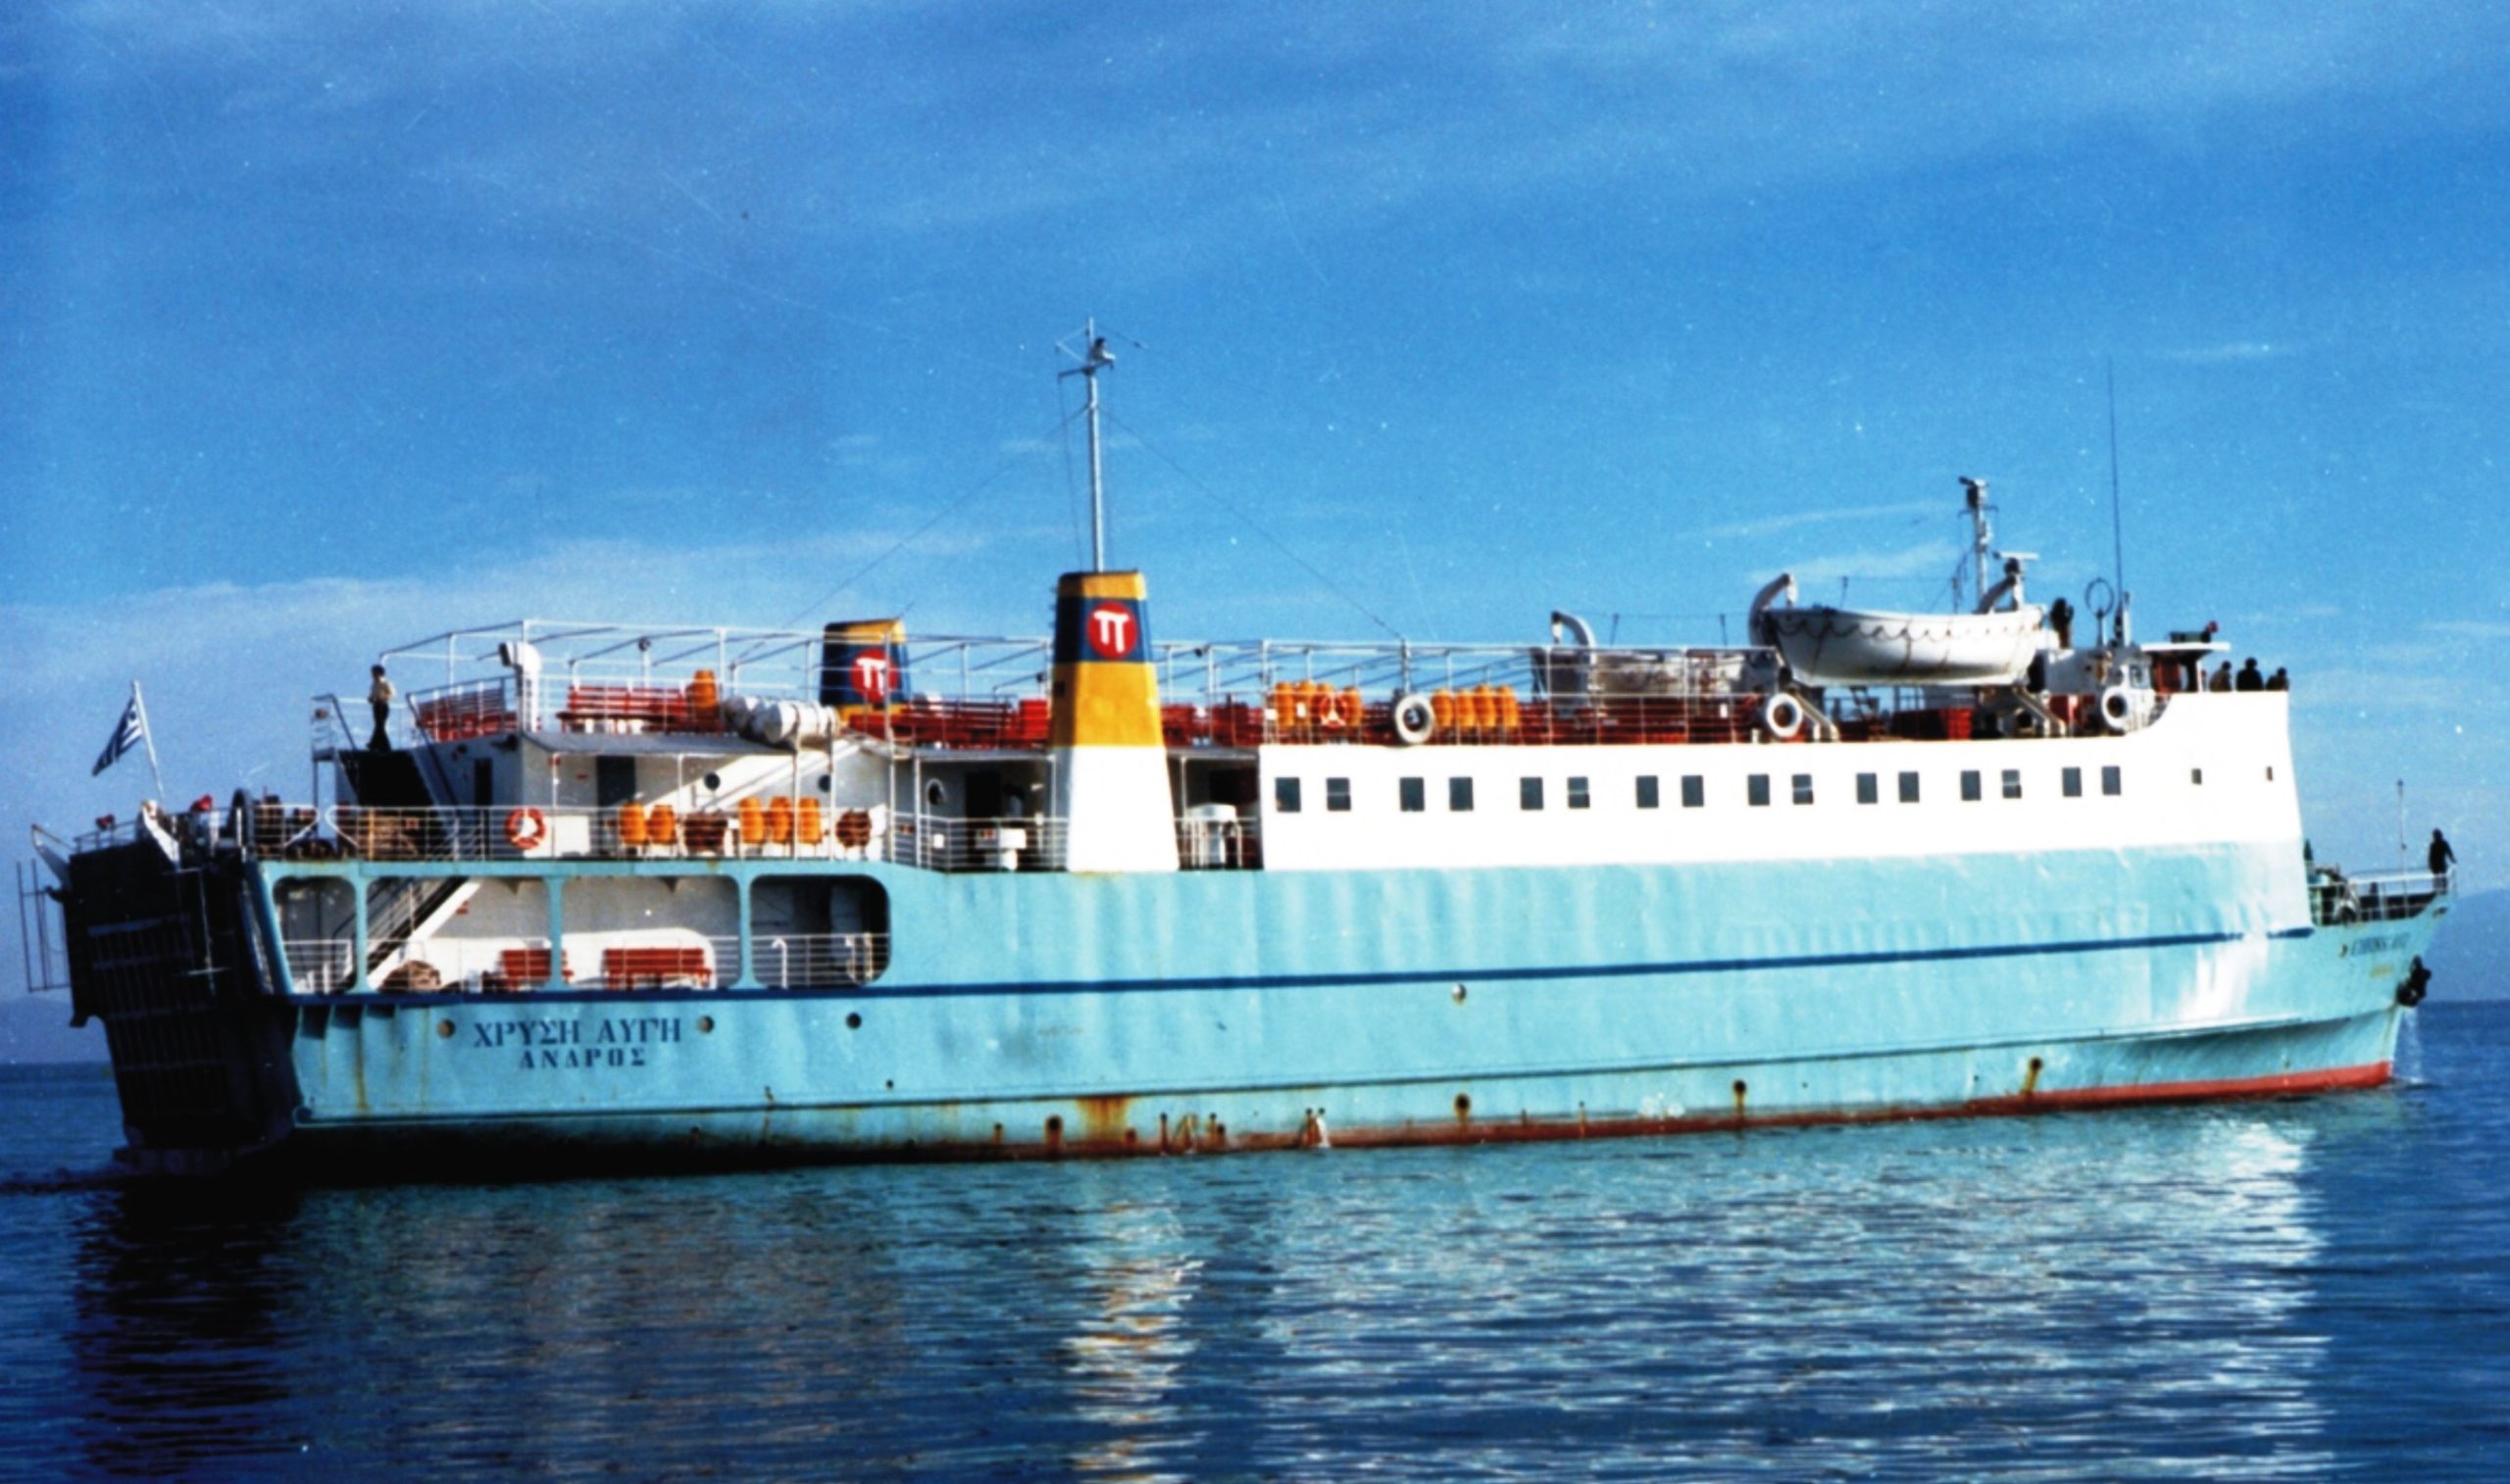 Το πλοίο "Χρυσή Αυγή" βυθίστηκε το 1983